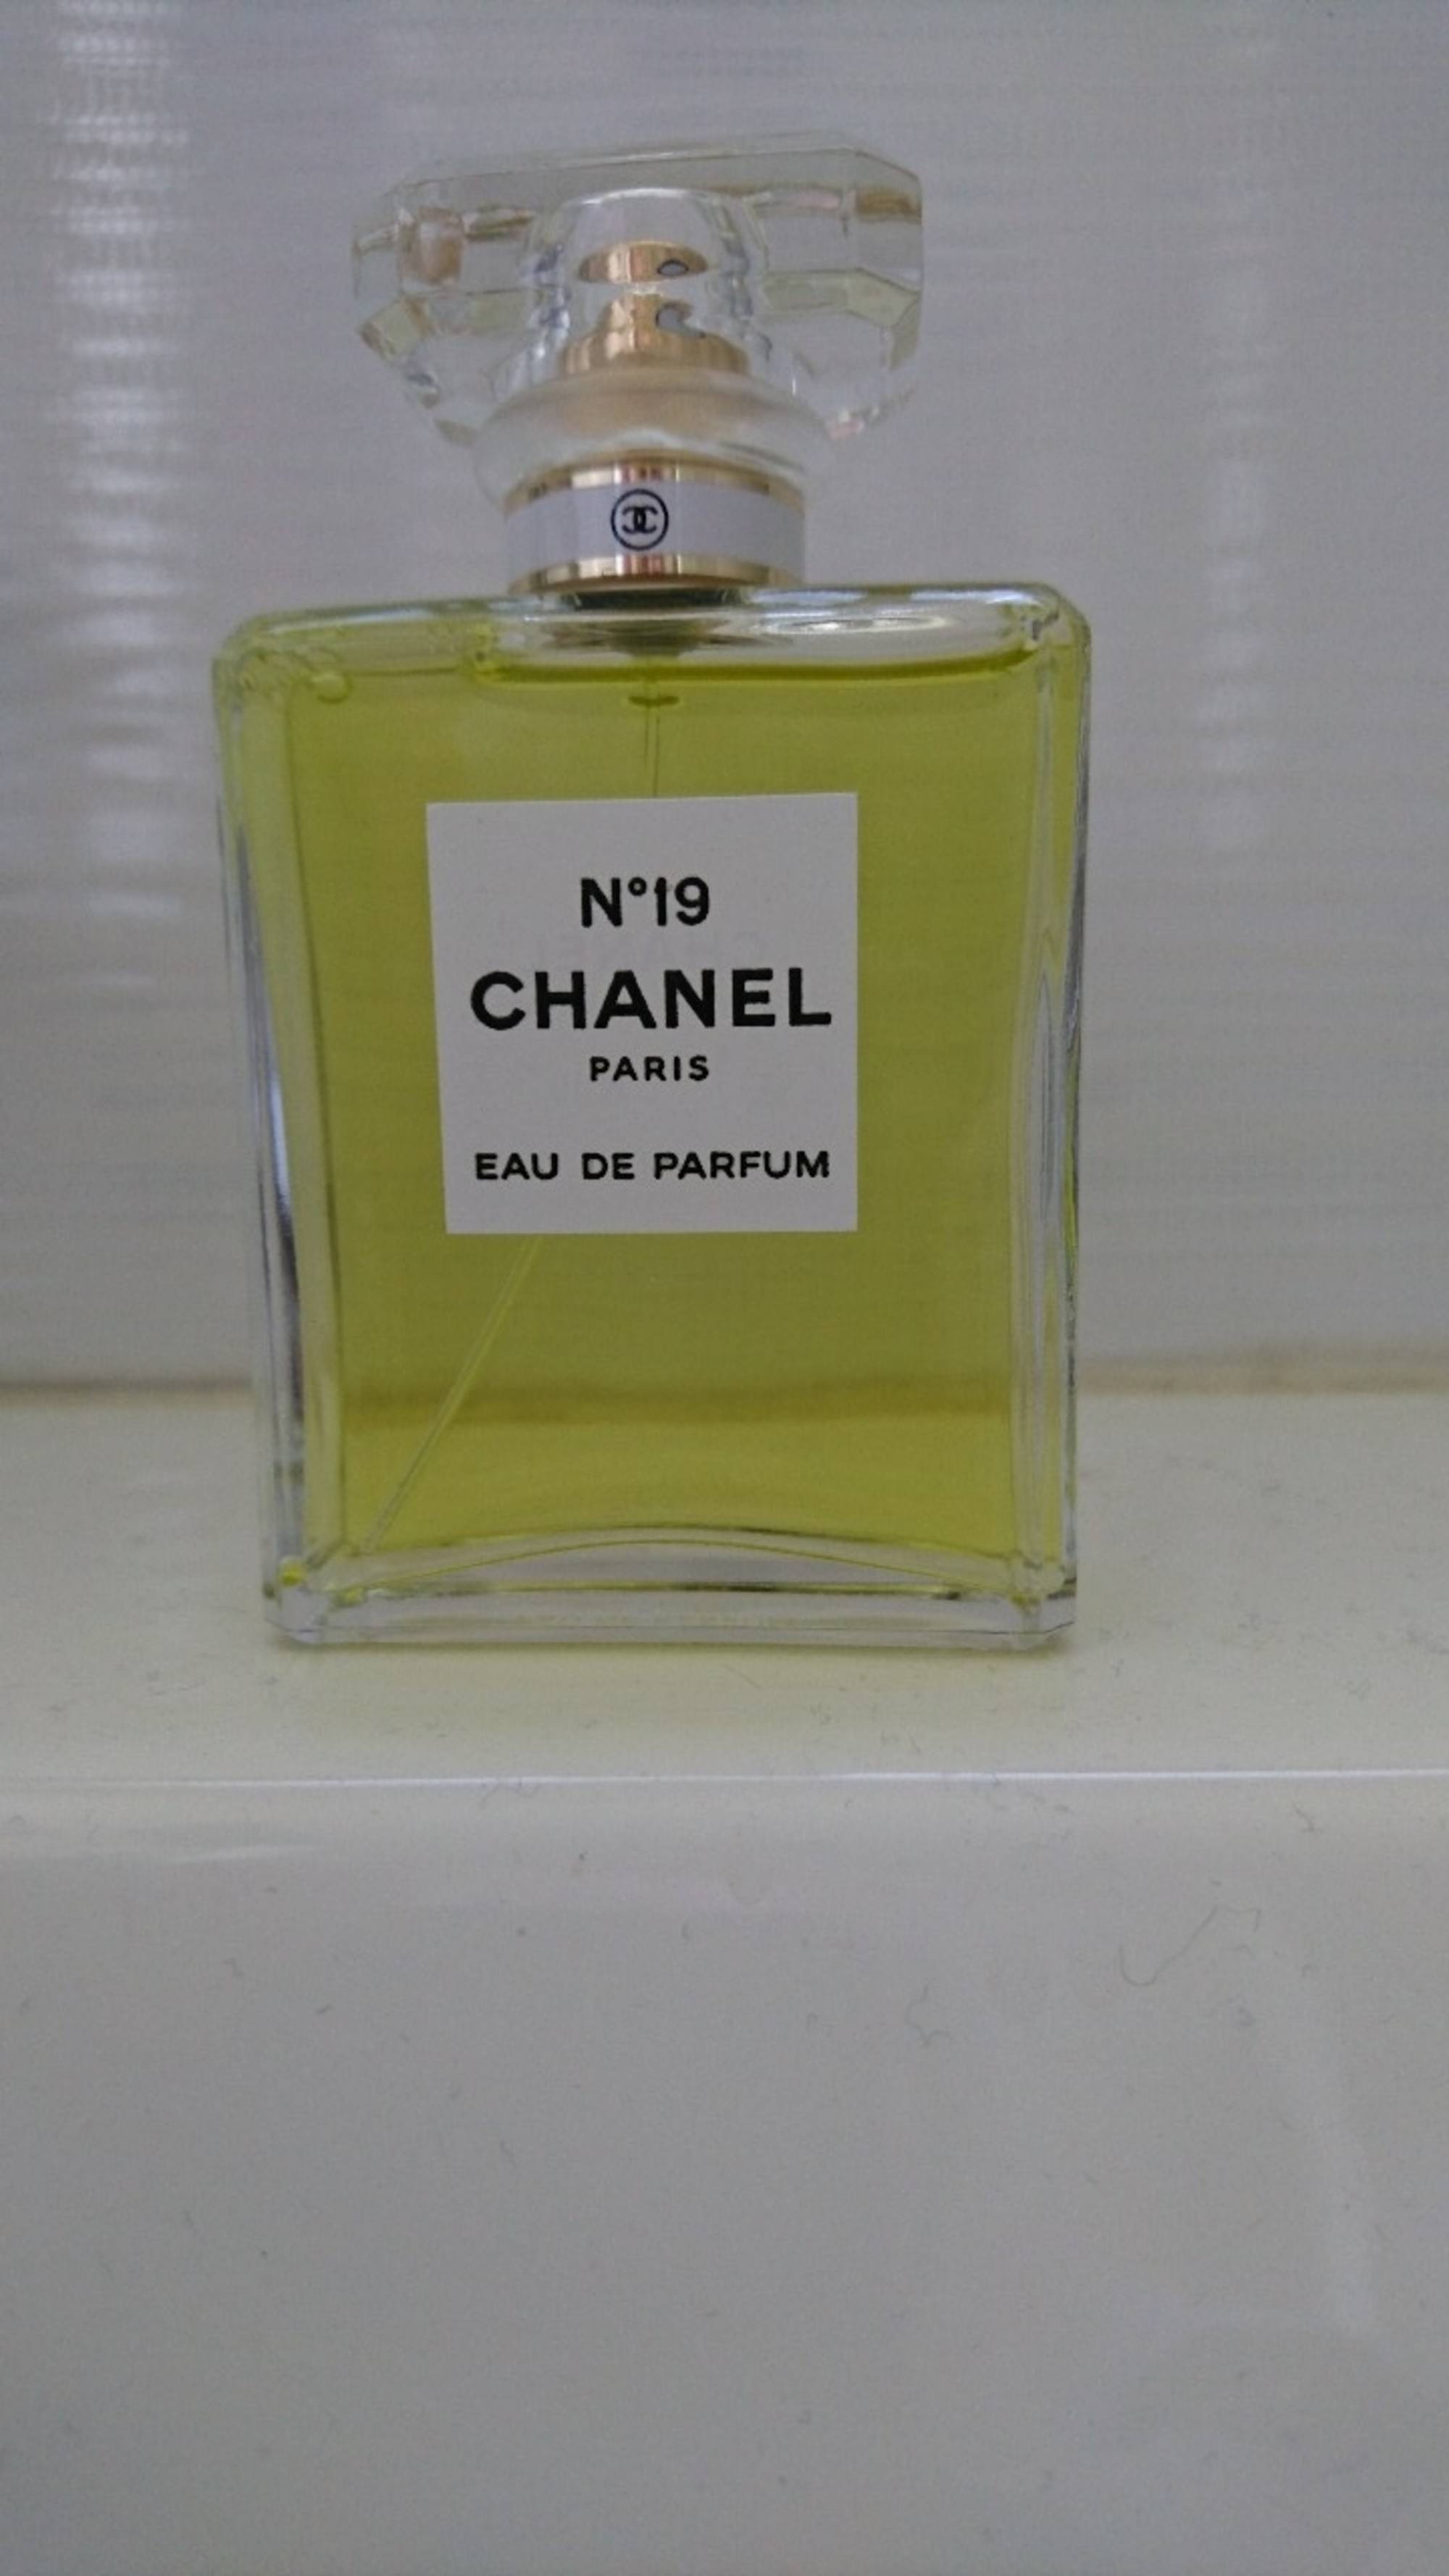 CHANEL - N°19 - Eau de parfum 